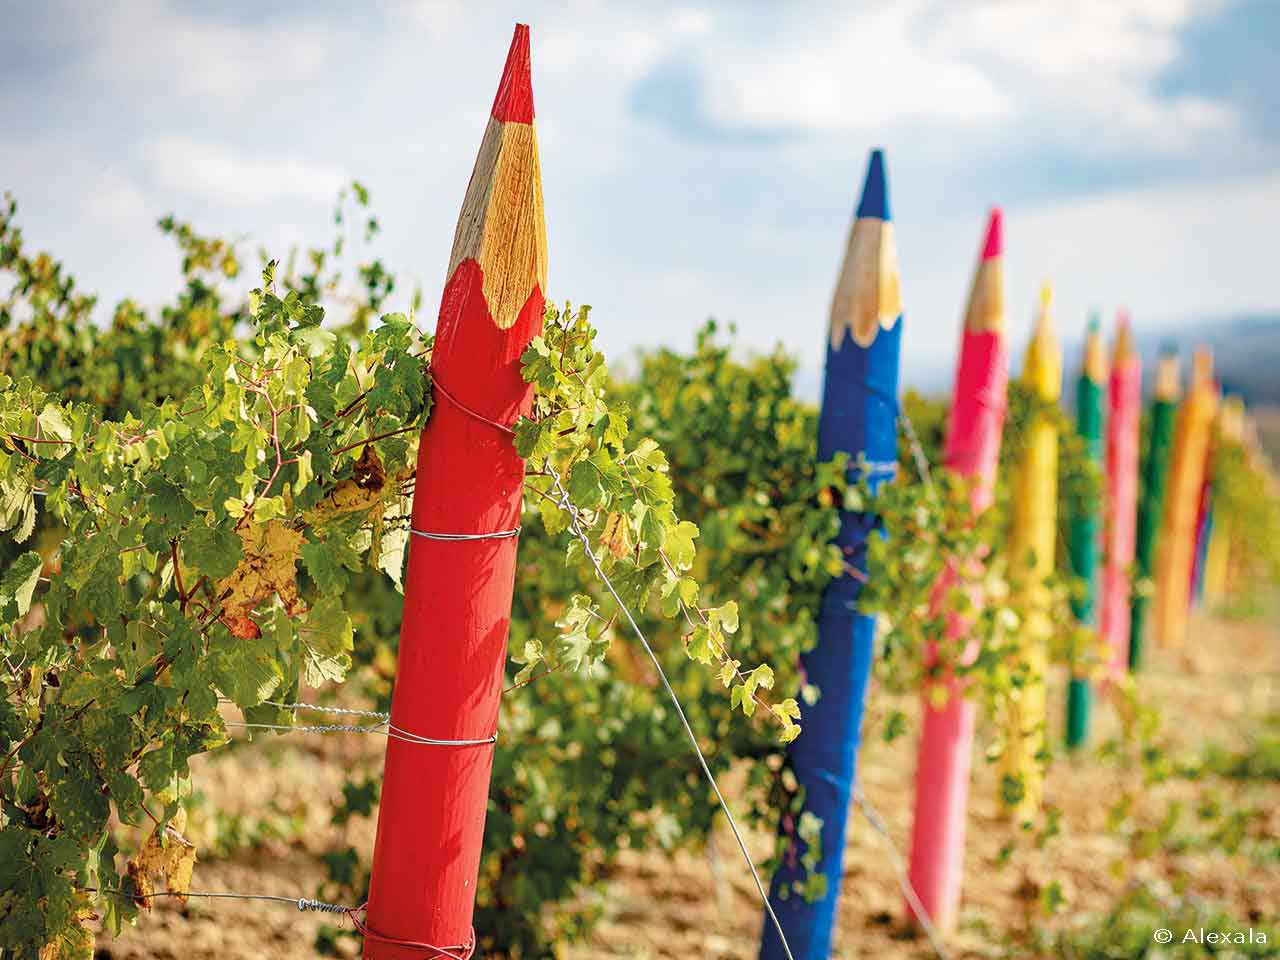 Le curiose installazioni a forma di enormi matite colorate nelle vigne di Cella Monte - Weekend nel Monferrato in camper.